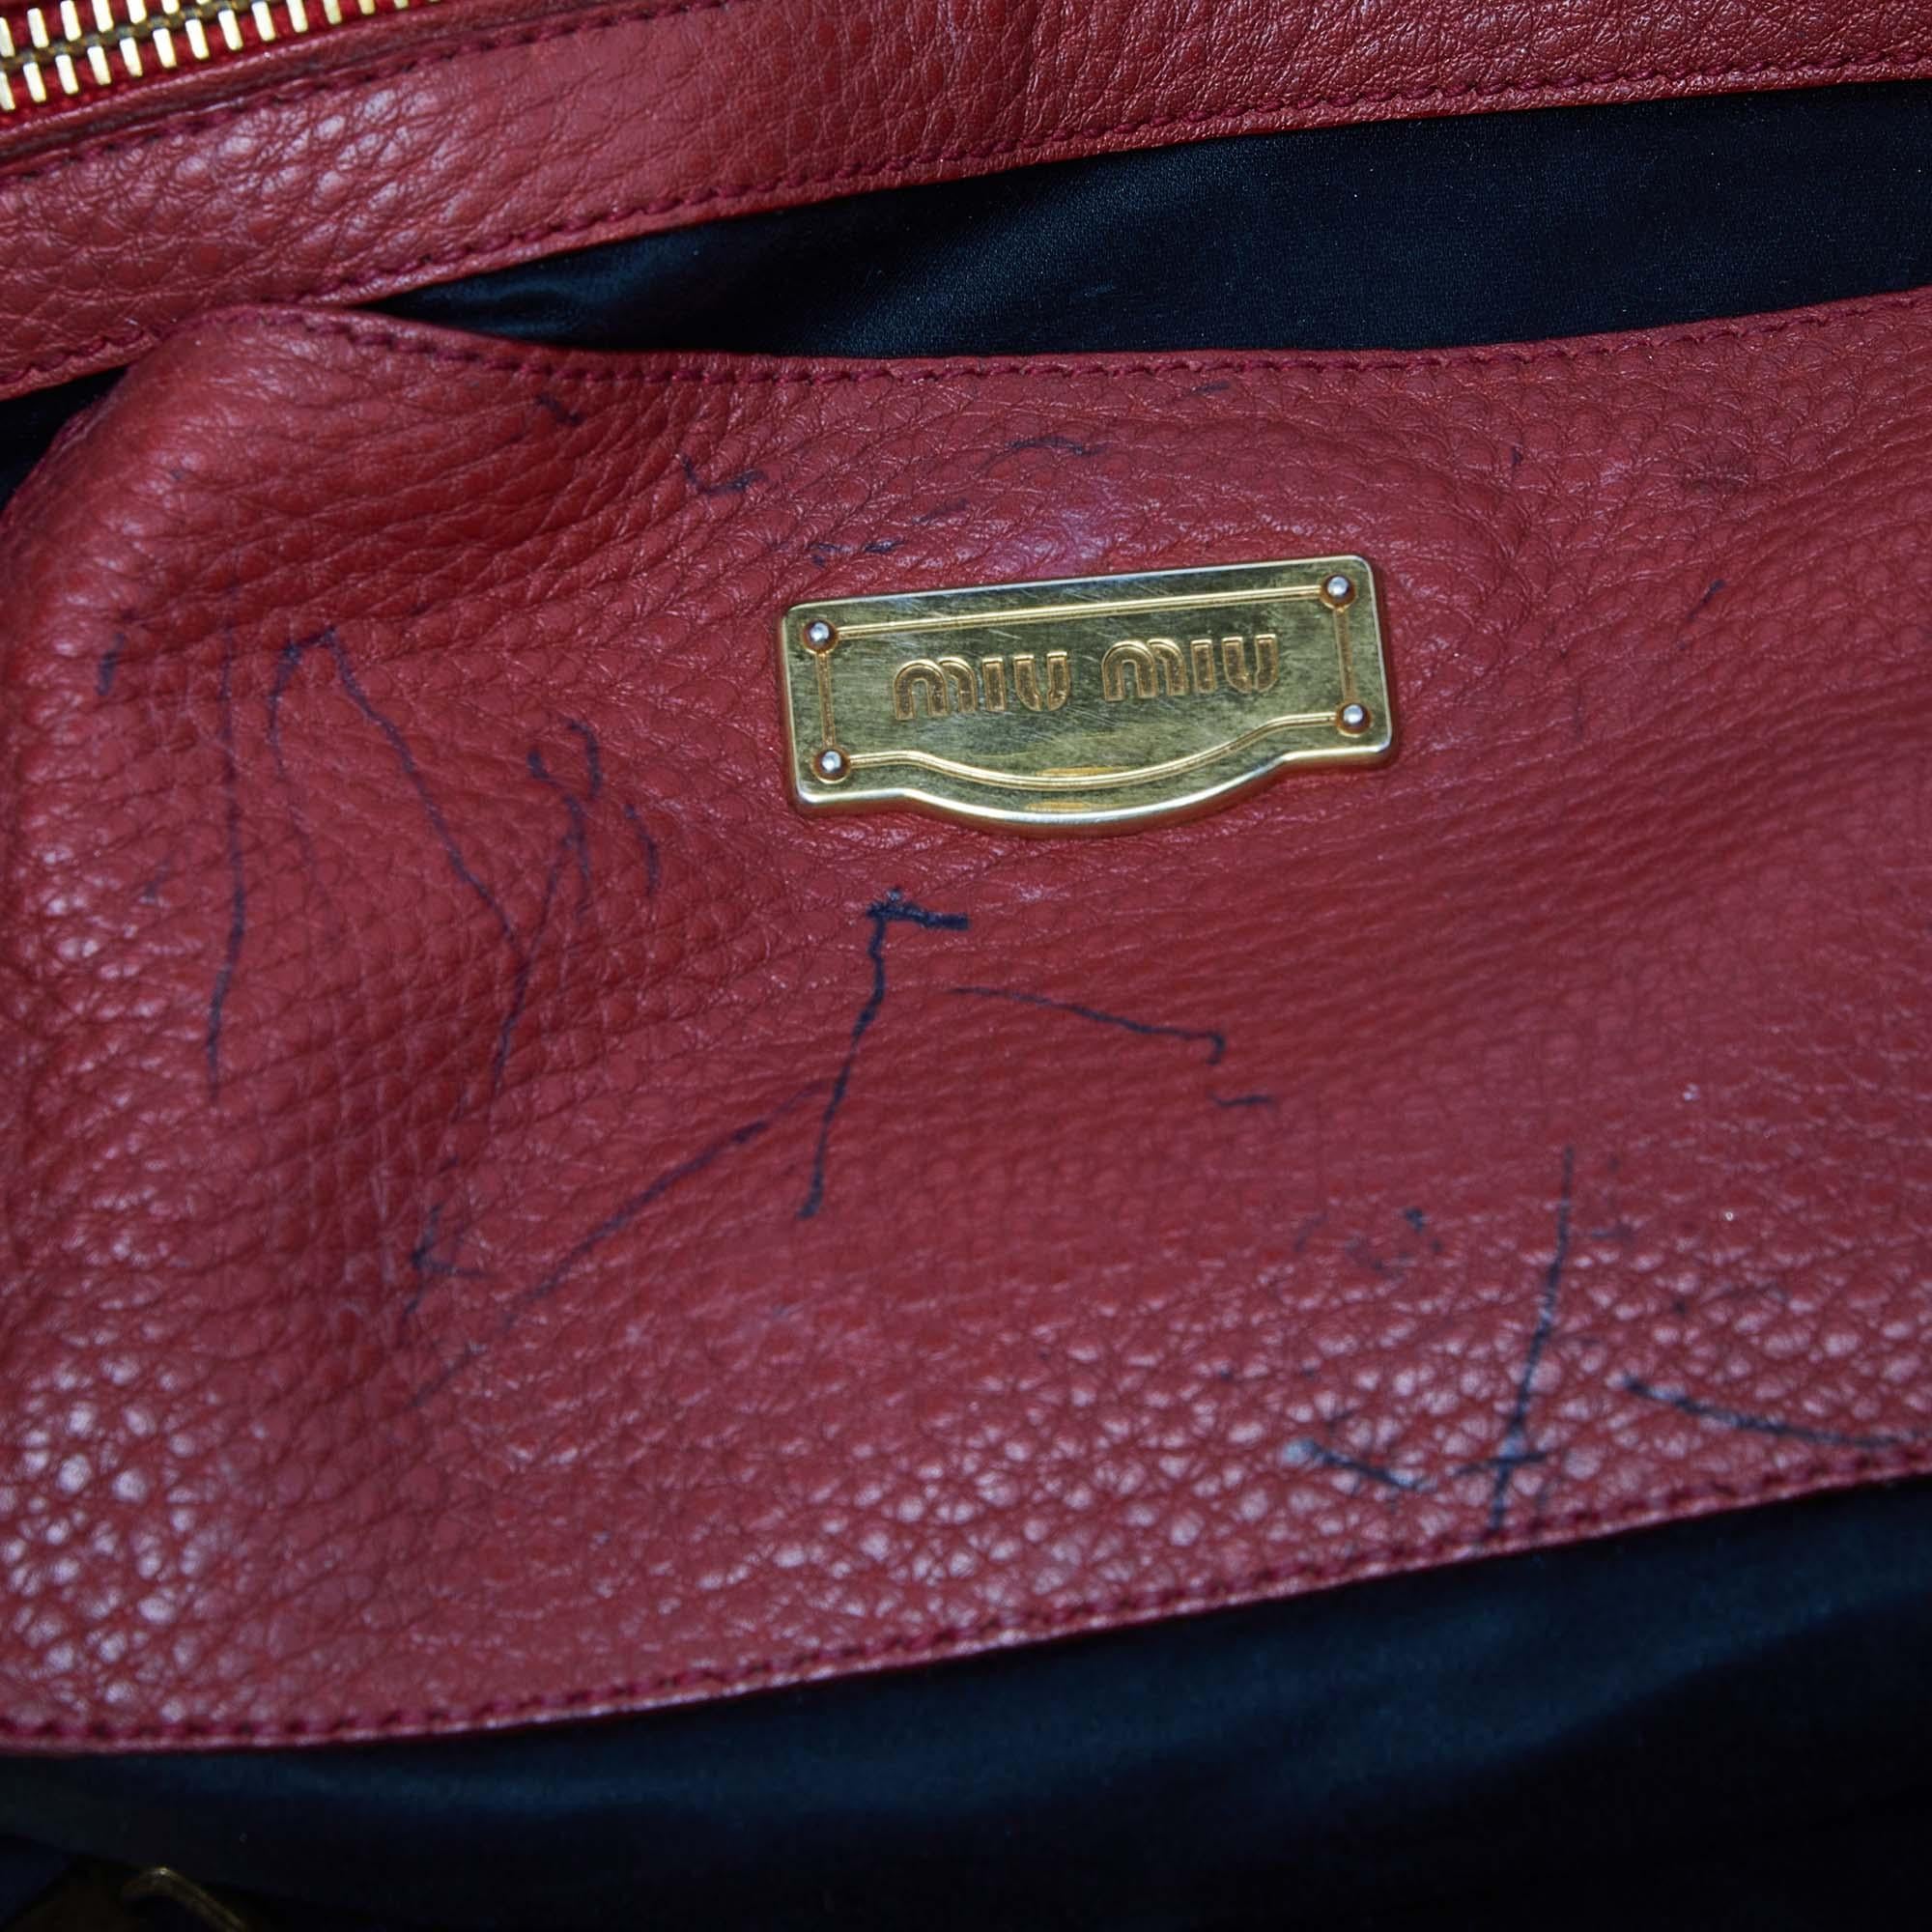 Miu Miu Red Leather Shopper Tote In Fair Condition For Sale In Dubai, Al Qouz 2